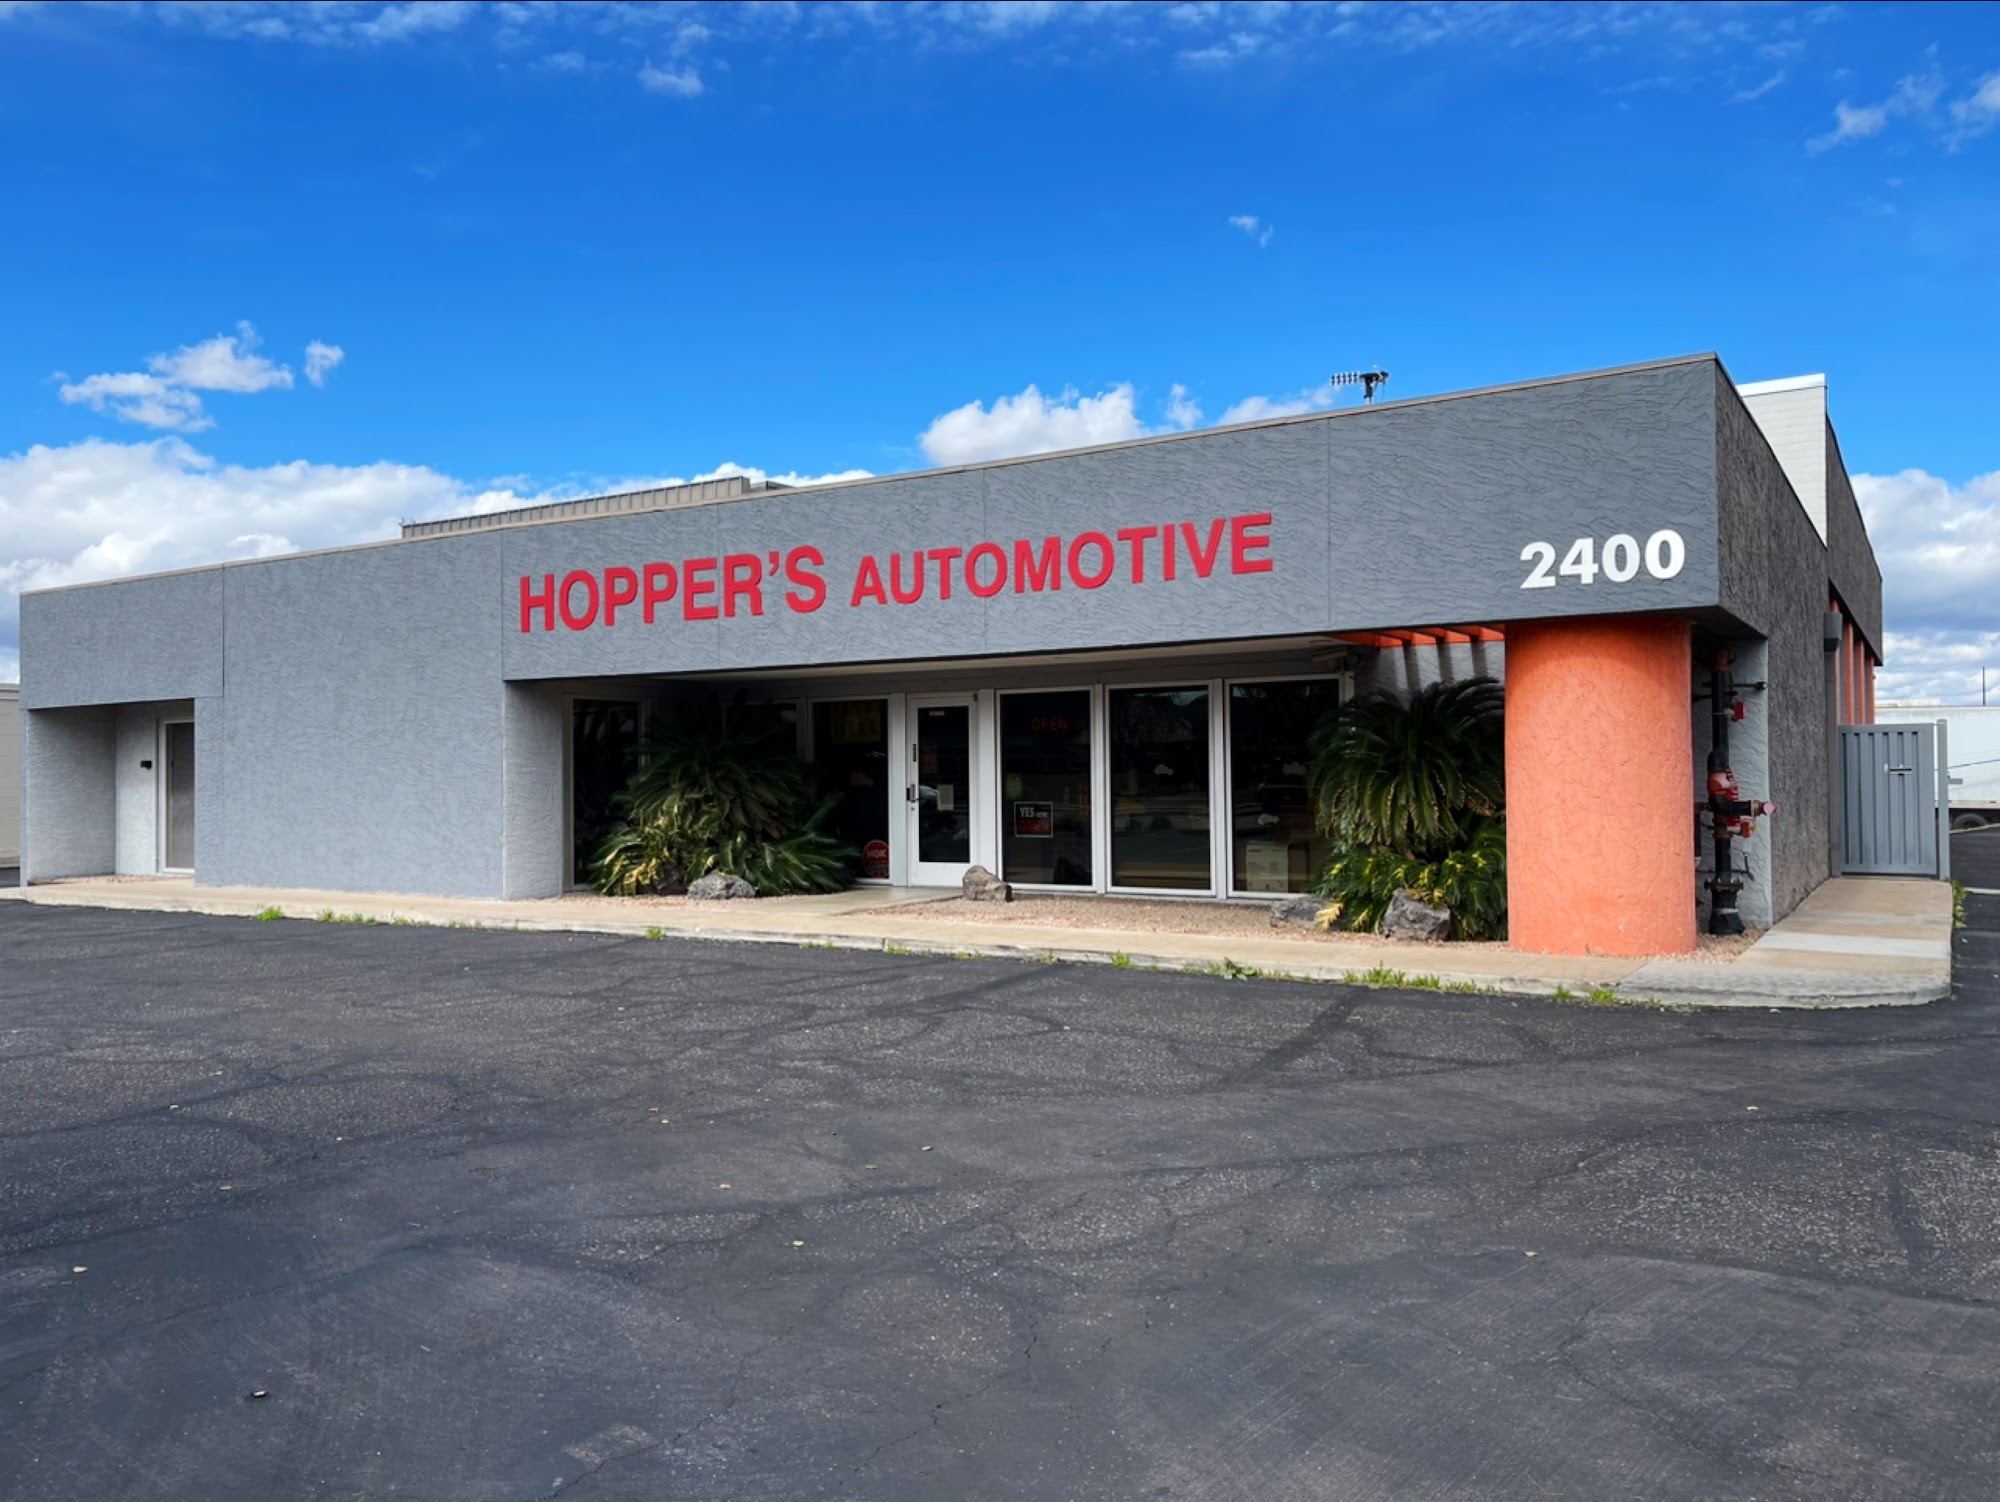 Hopper's Automotive